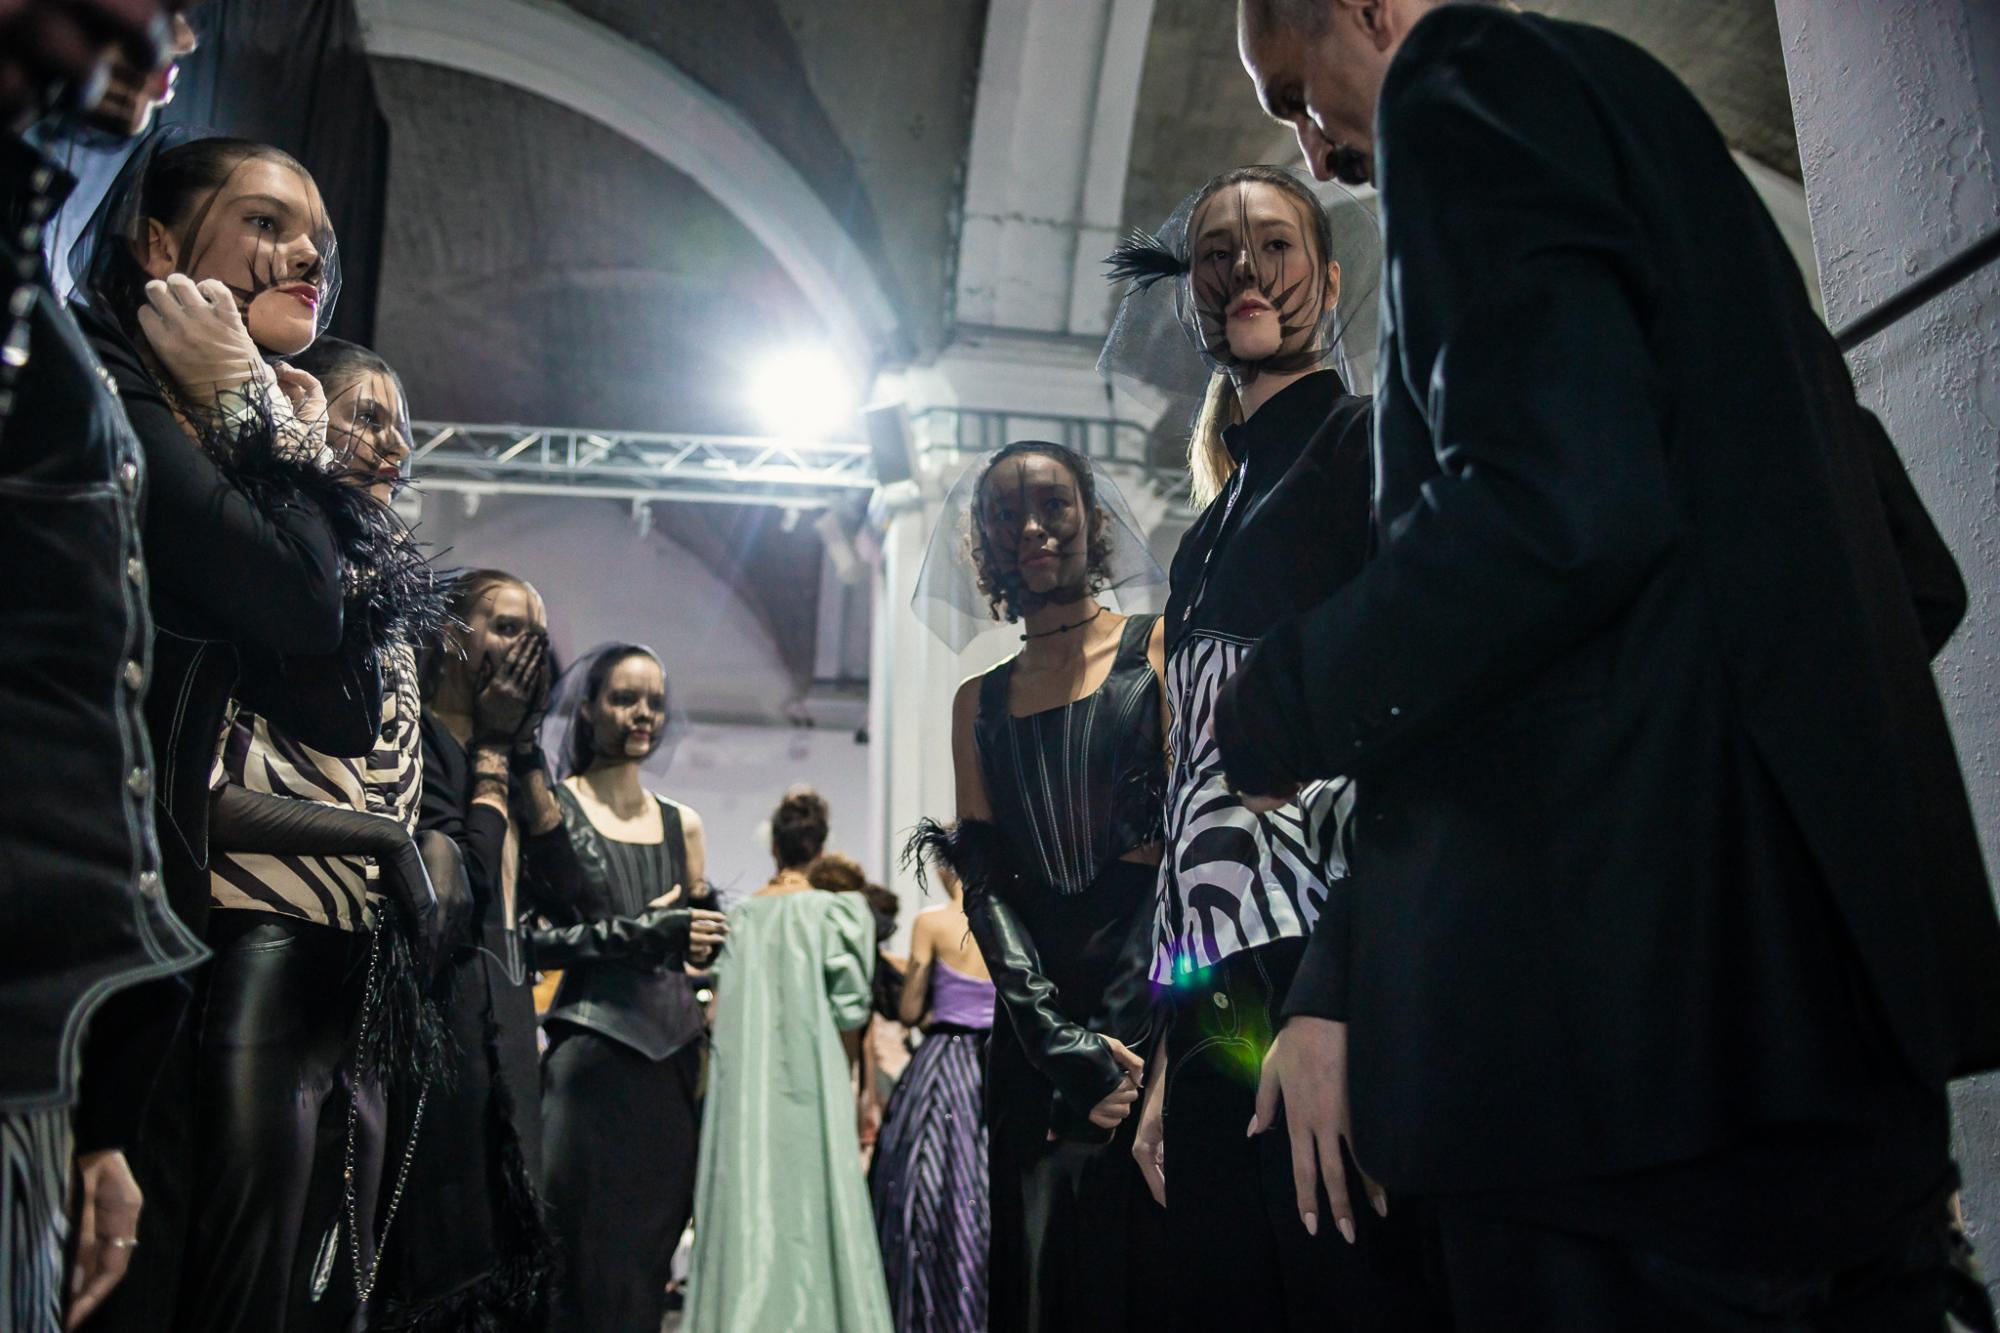 25-й Ukrainian Fashion Week: бекстейдж найгучнішої модної події в Україні